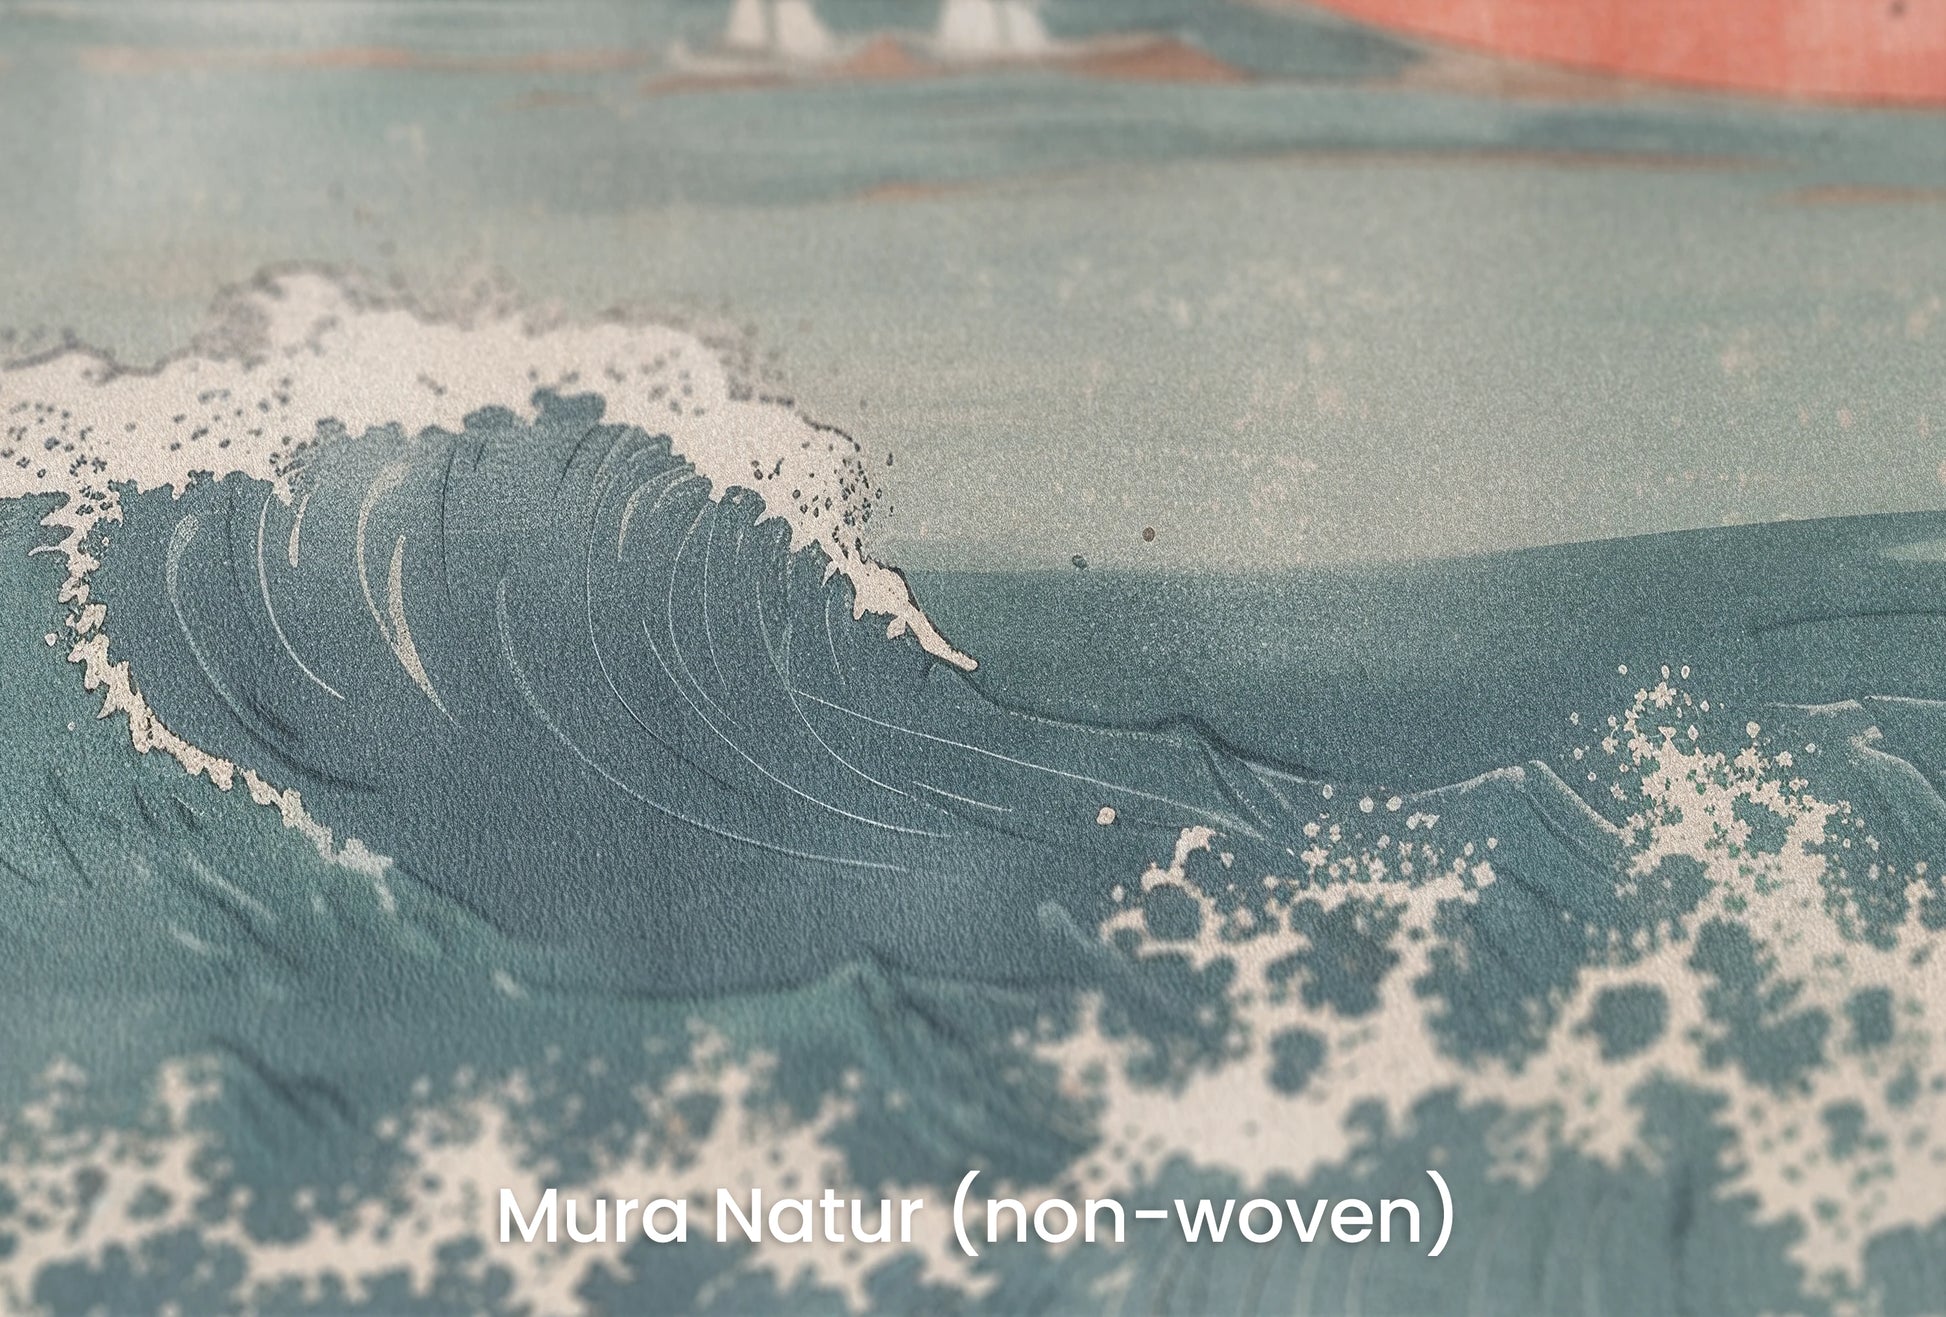 Zbliżenie na artystyczną fototapetę o nazwie Fuji's Serenity na podłożu Mura Natur (non-woven) - naturalne i ekologiczne podłoże.